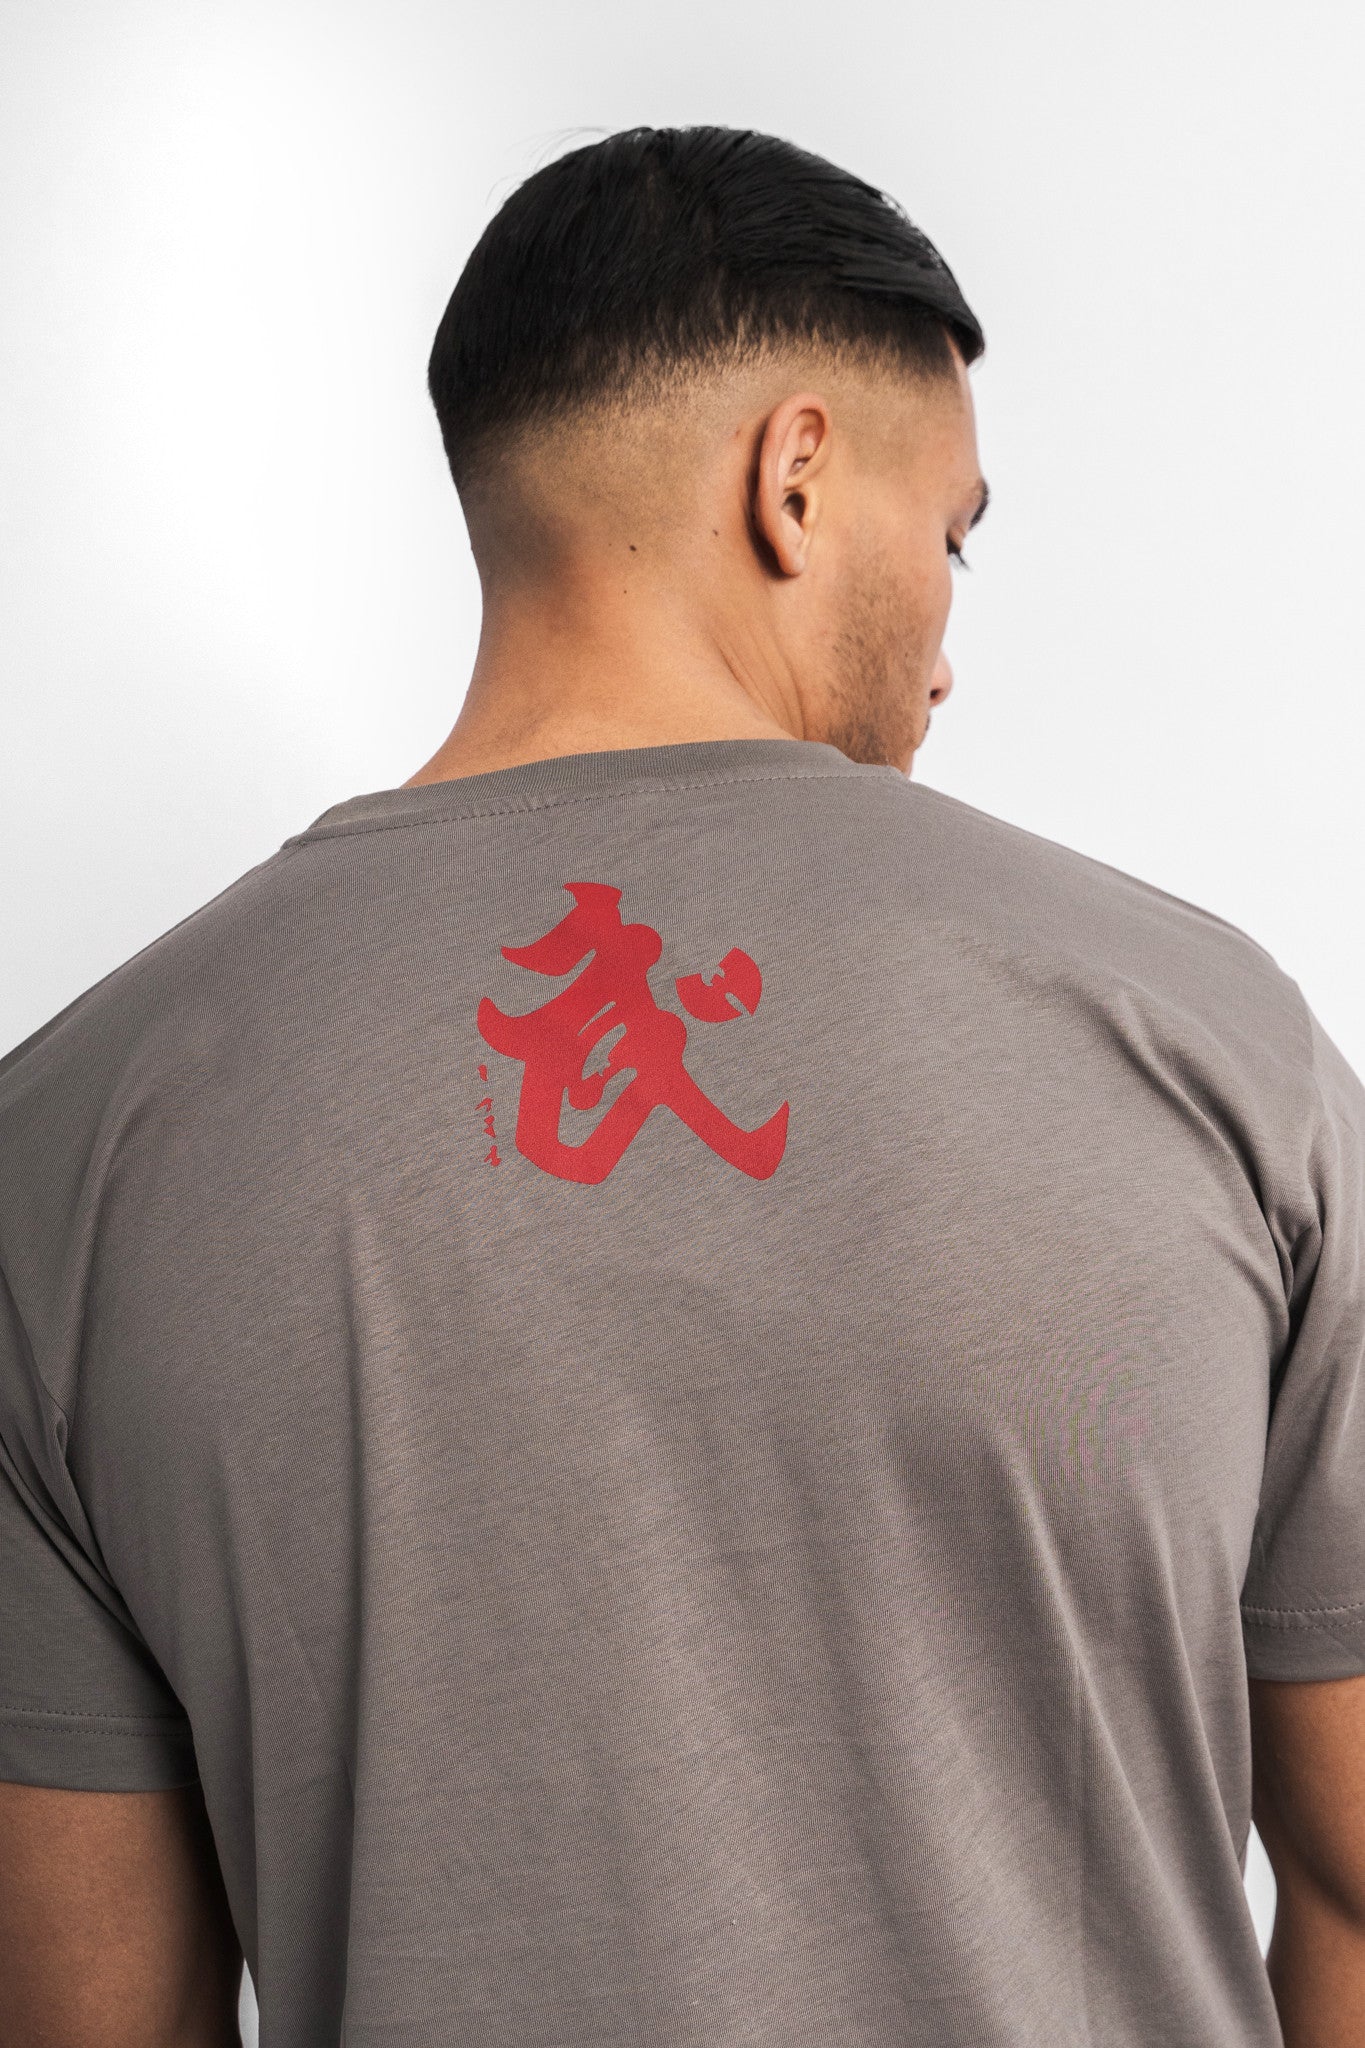 WU-WEAR - Swordstyle T-Shirt - Wu-Tang Clan